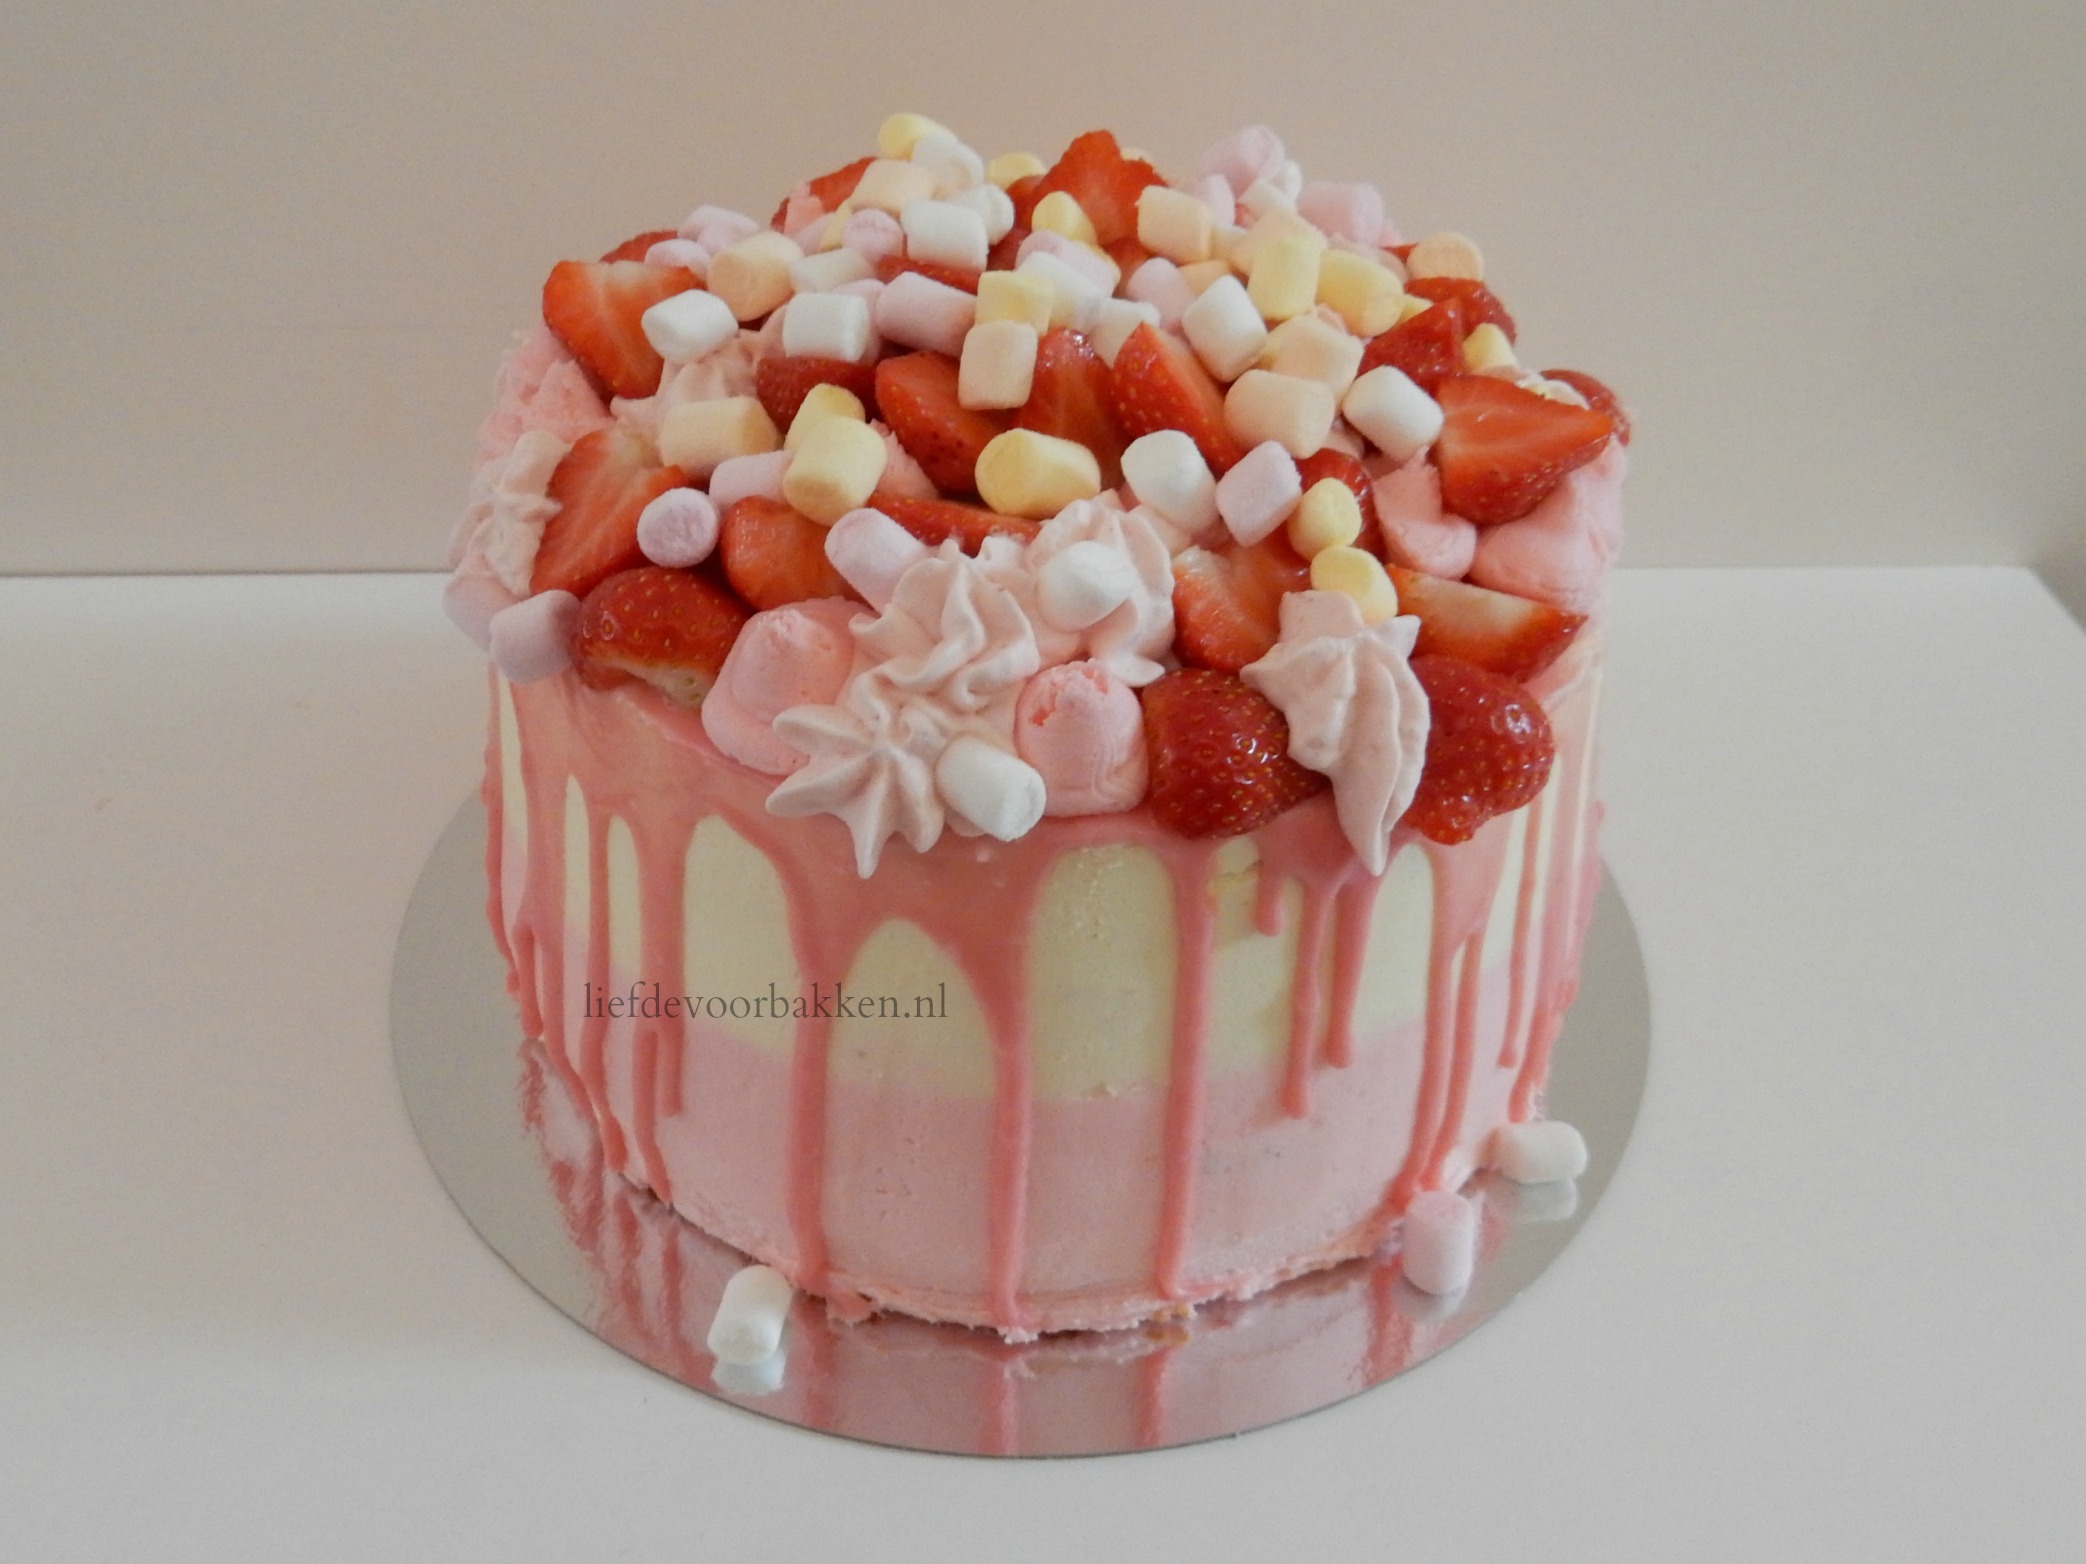 Dripcake met aardbeien en – Liefde